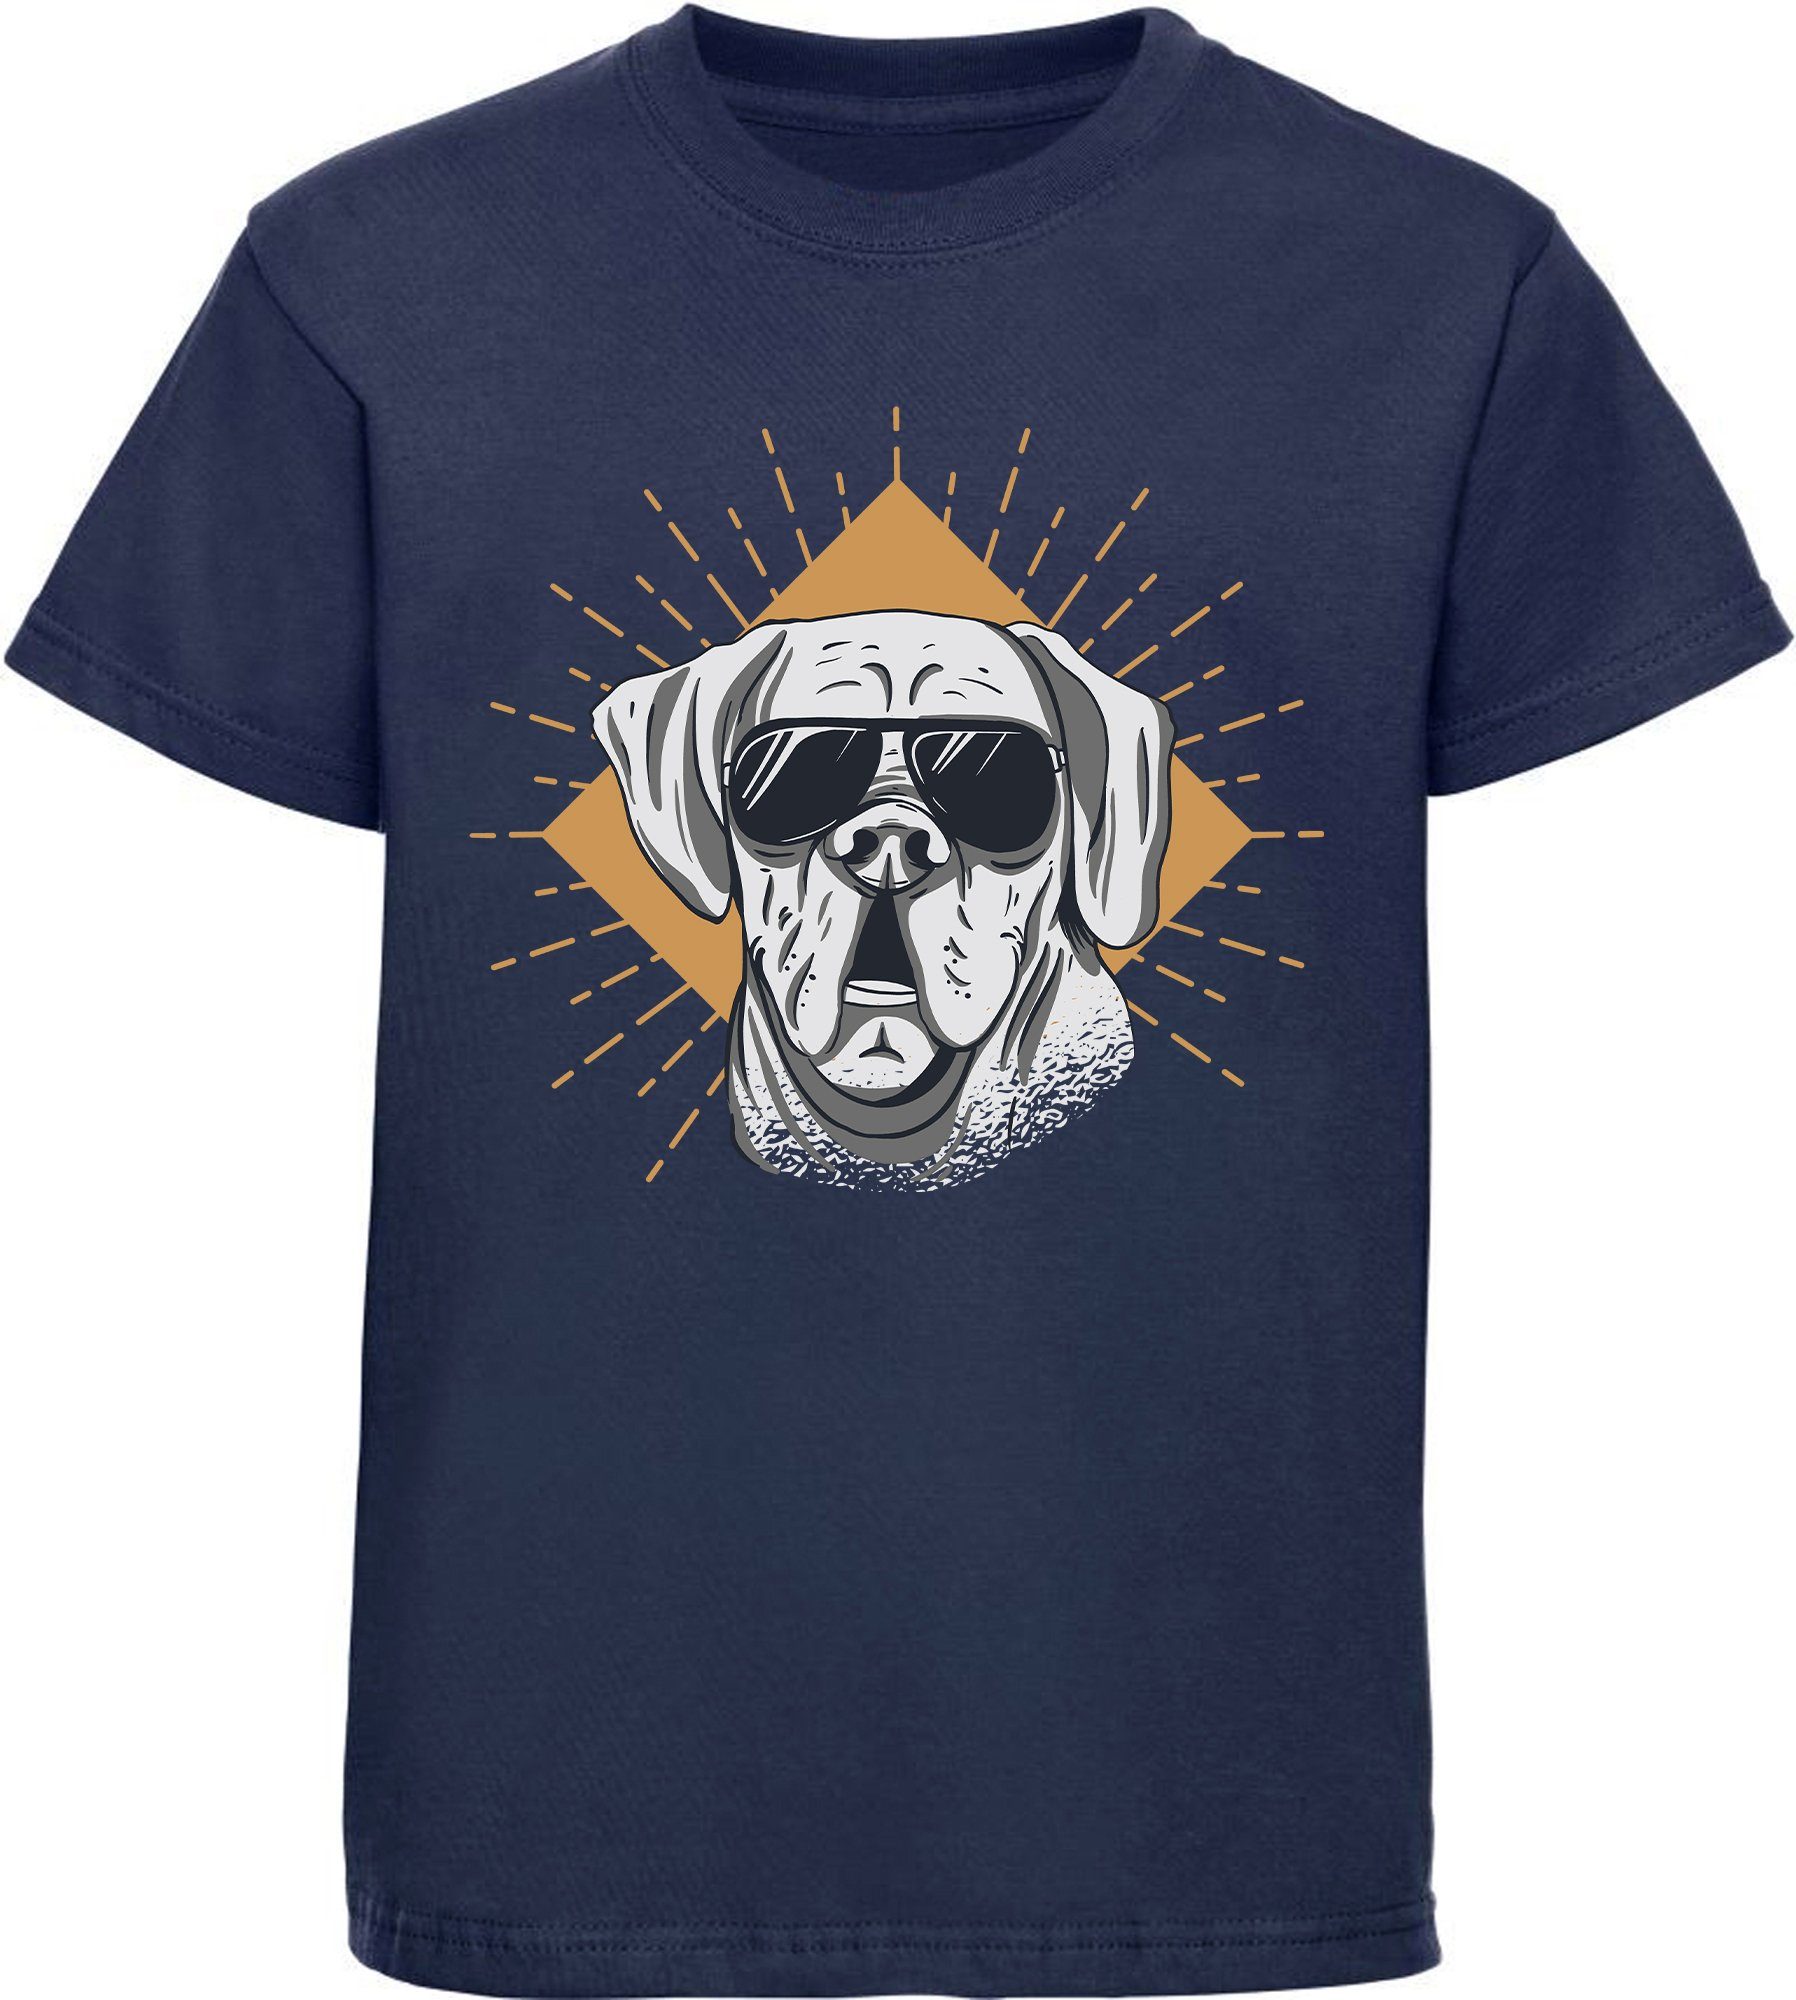 MyDesign24 Print-Shirt bedrucktes Kinder Hunde T-Shirt - Cooler Hund mit Sonnenbrille Baumwollshirt mit Aufdruck, i224 navy blau